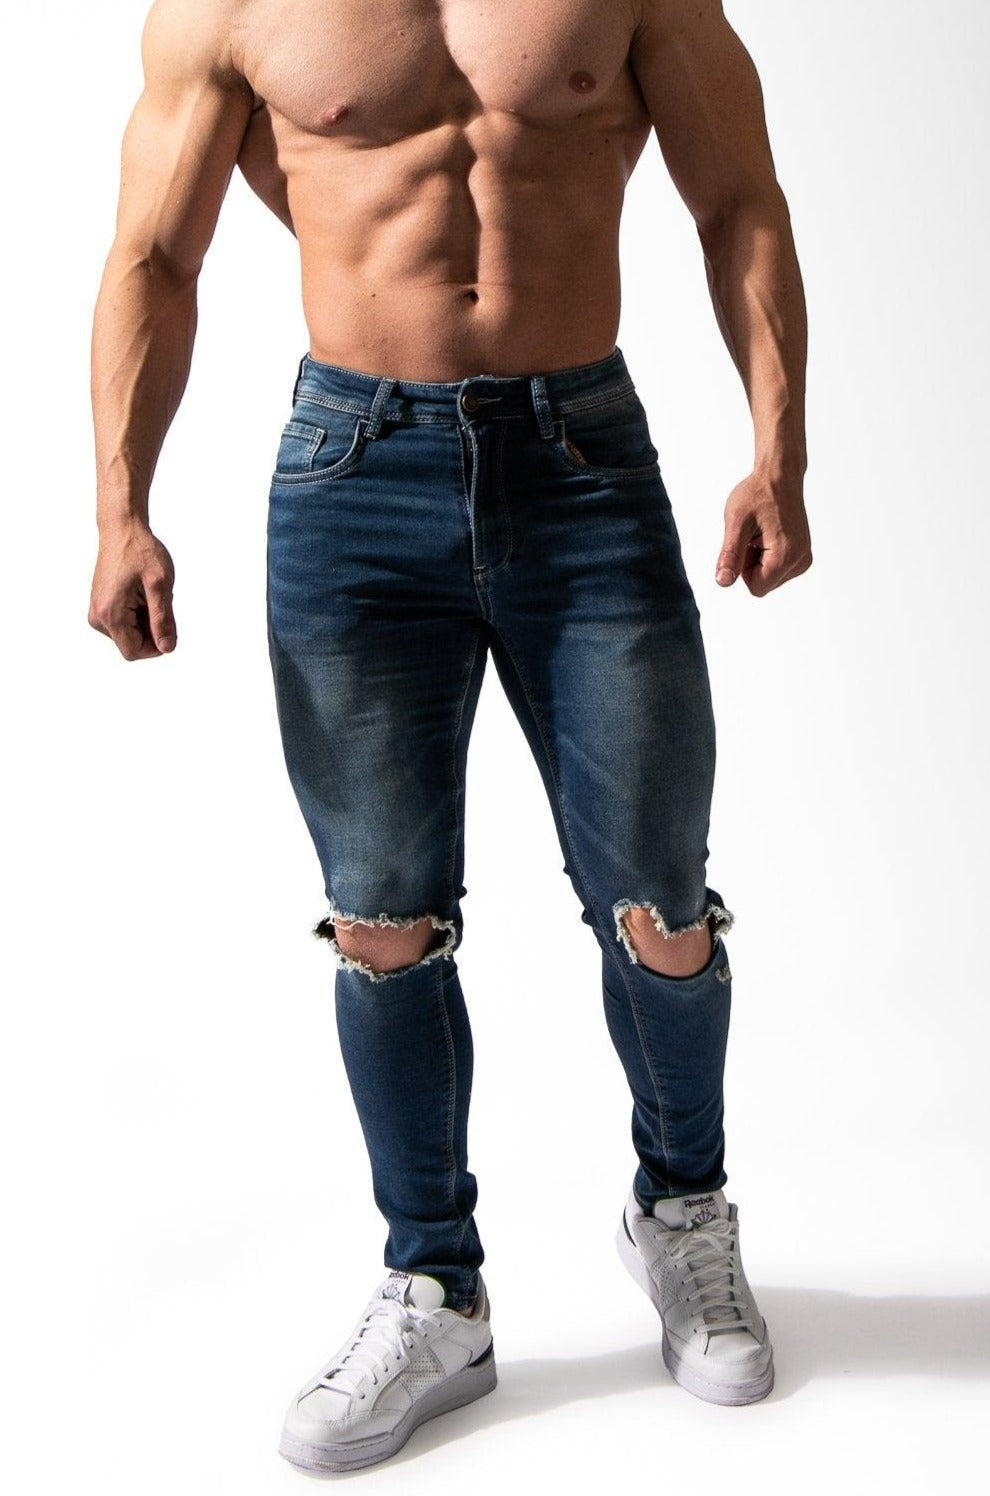 LV Premium Jean Mens 38 Denim Shorts